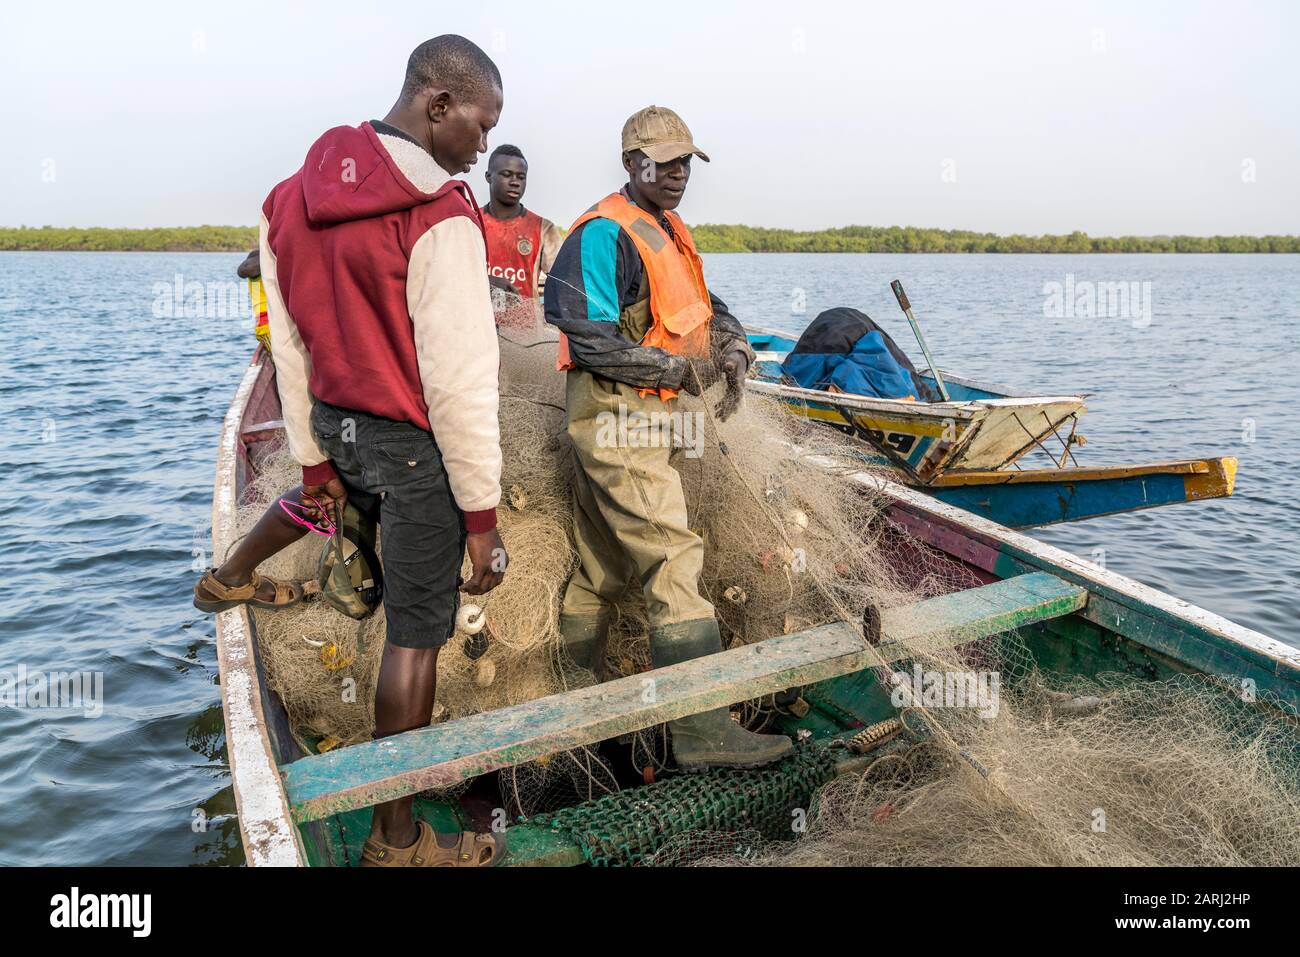 Fischer mit Netz in Ihrem Boot am Flussufer, Insel Jinack Island